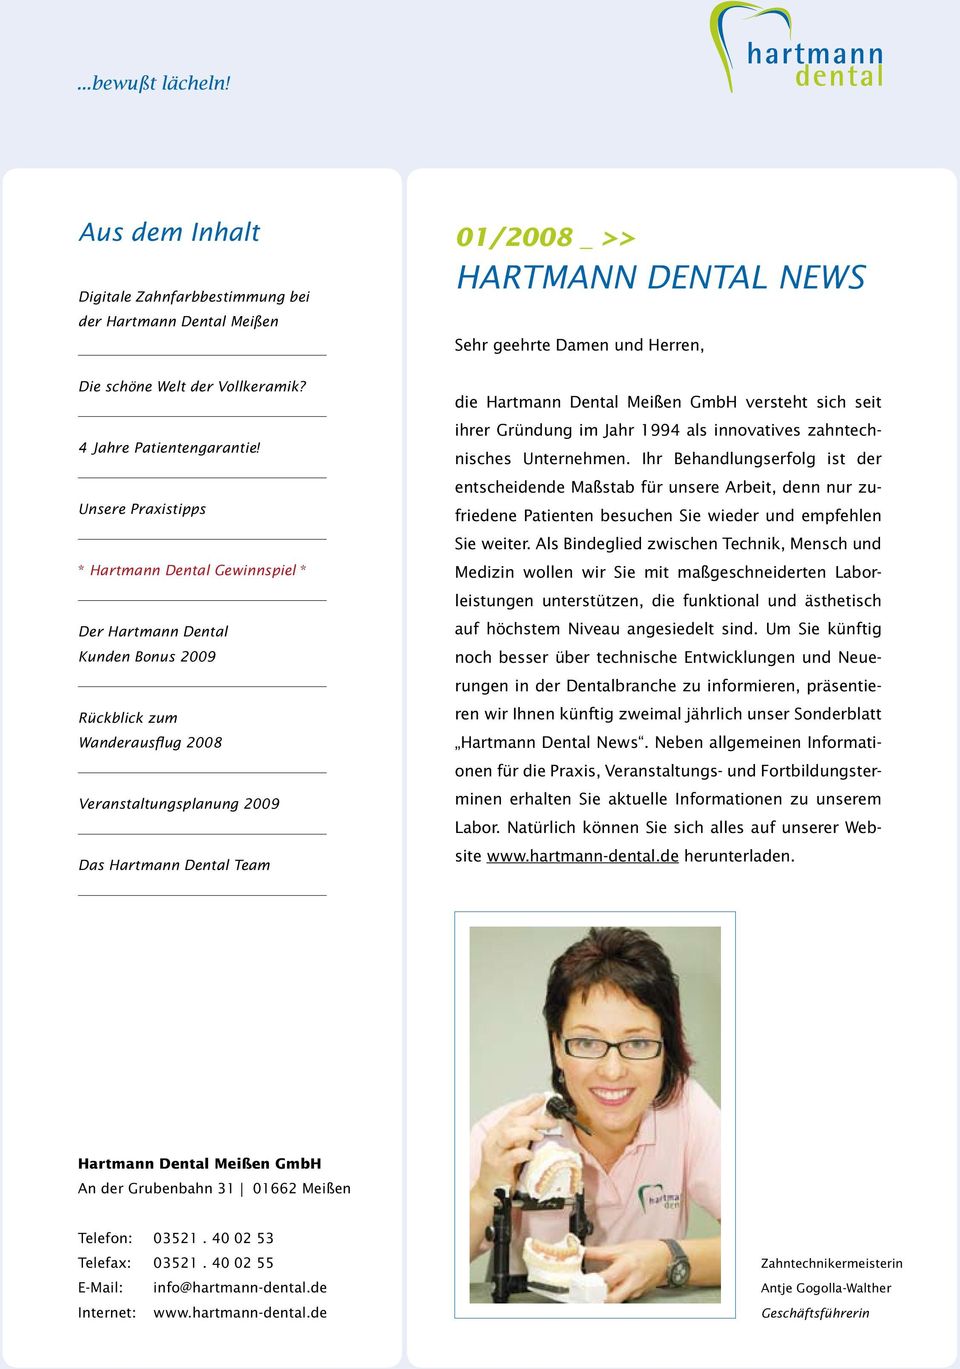 Dental News Sehr geehrte Damen und Herren, die Hartmann Dental Meißen GmbH versteht sich seit ihrer Gründung im Jahr 1994 als innovatives zahntechnisches Unternehmen.